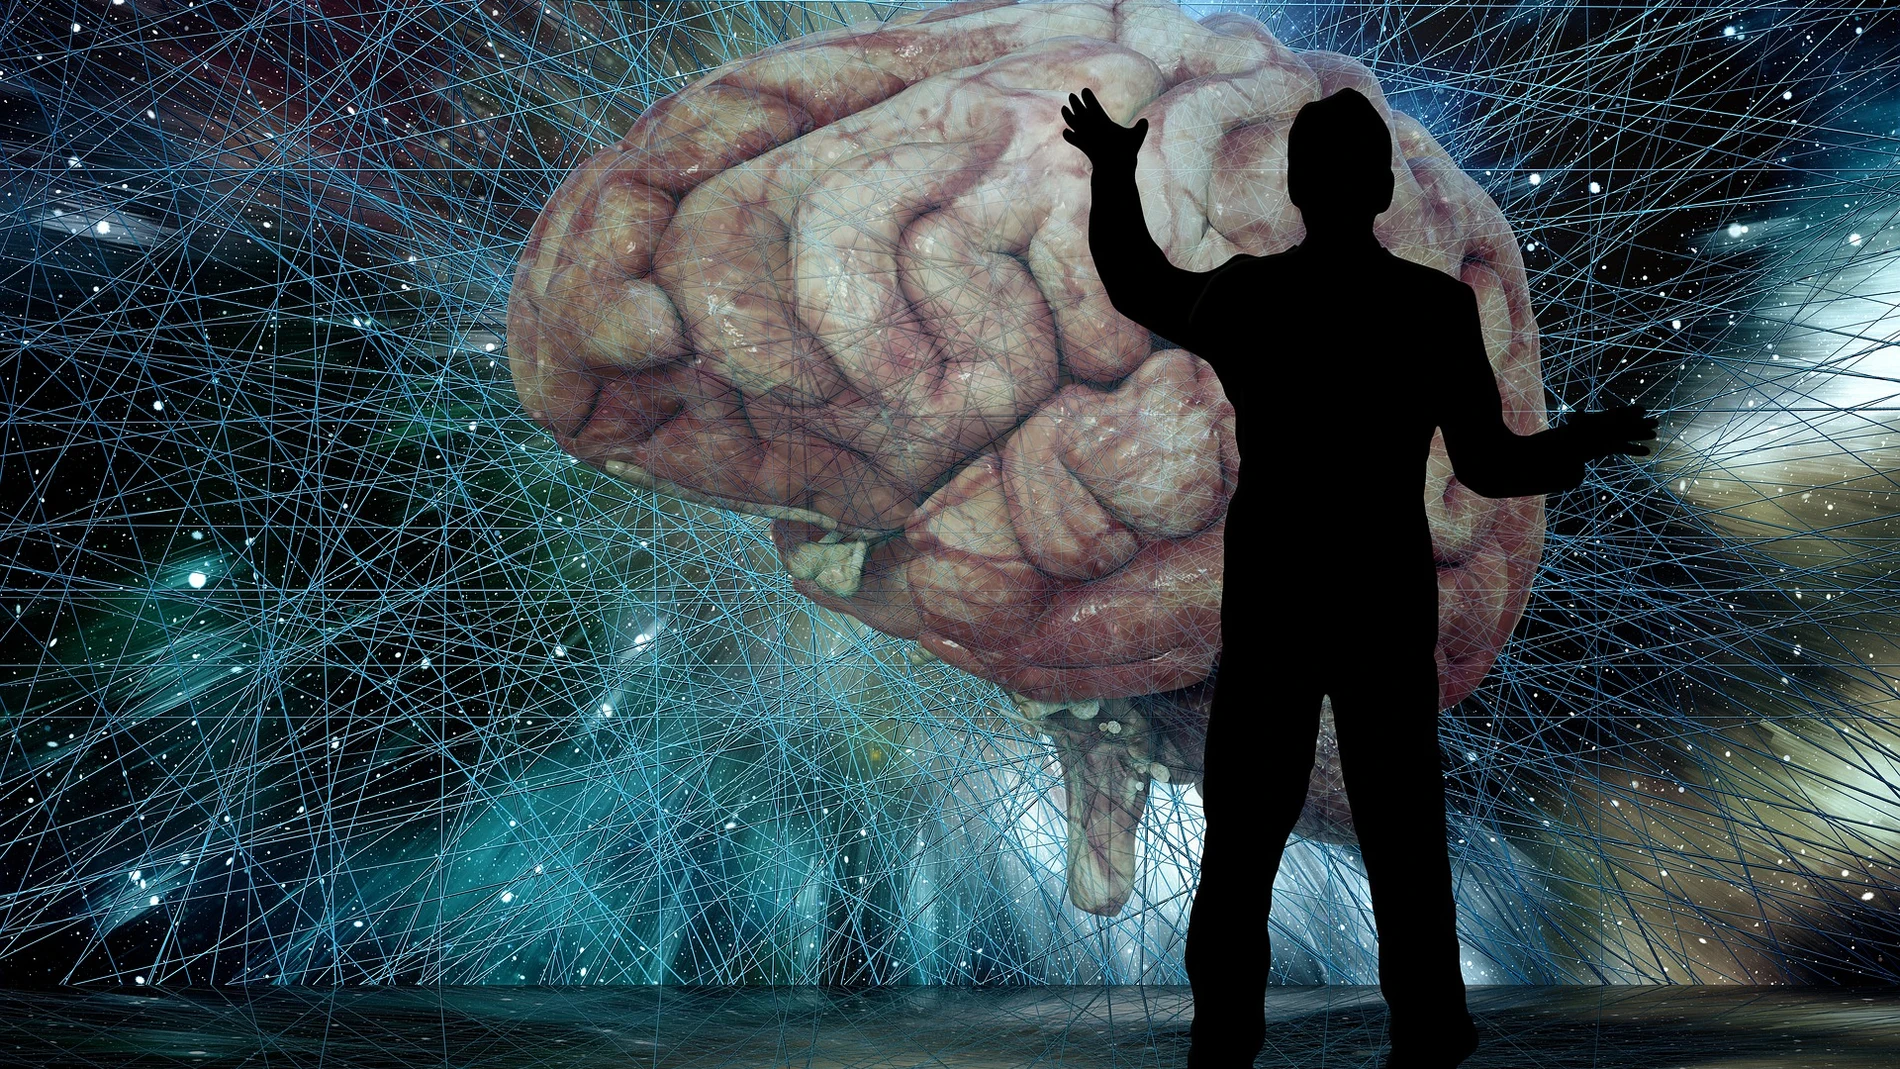 Una silueta de una persona con las manos en alto mirando un cerebro, con un fondo de líneas y luces que asemeja el espacio exterior